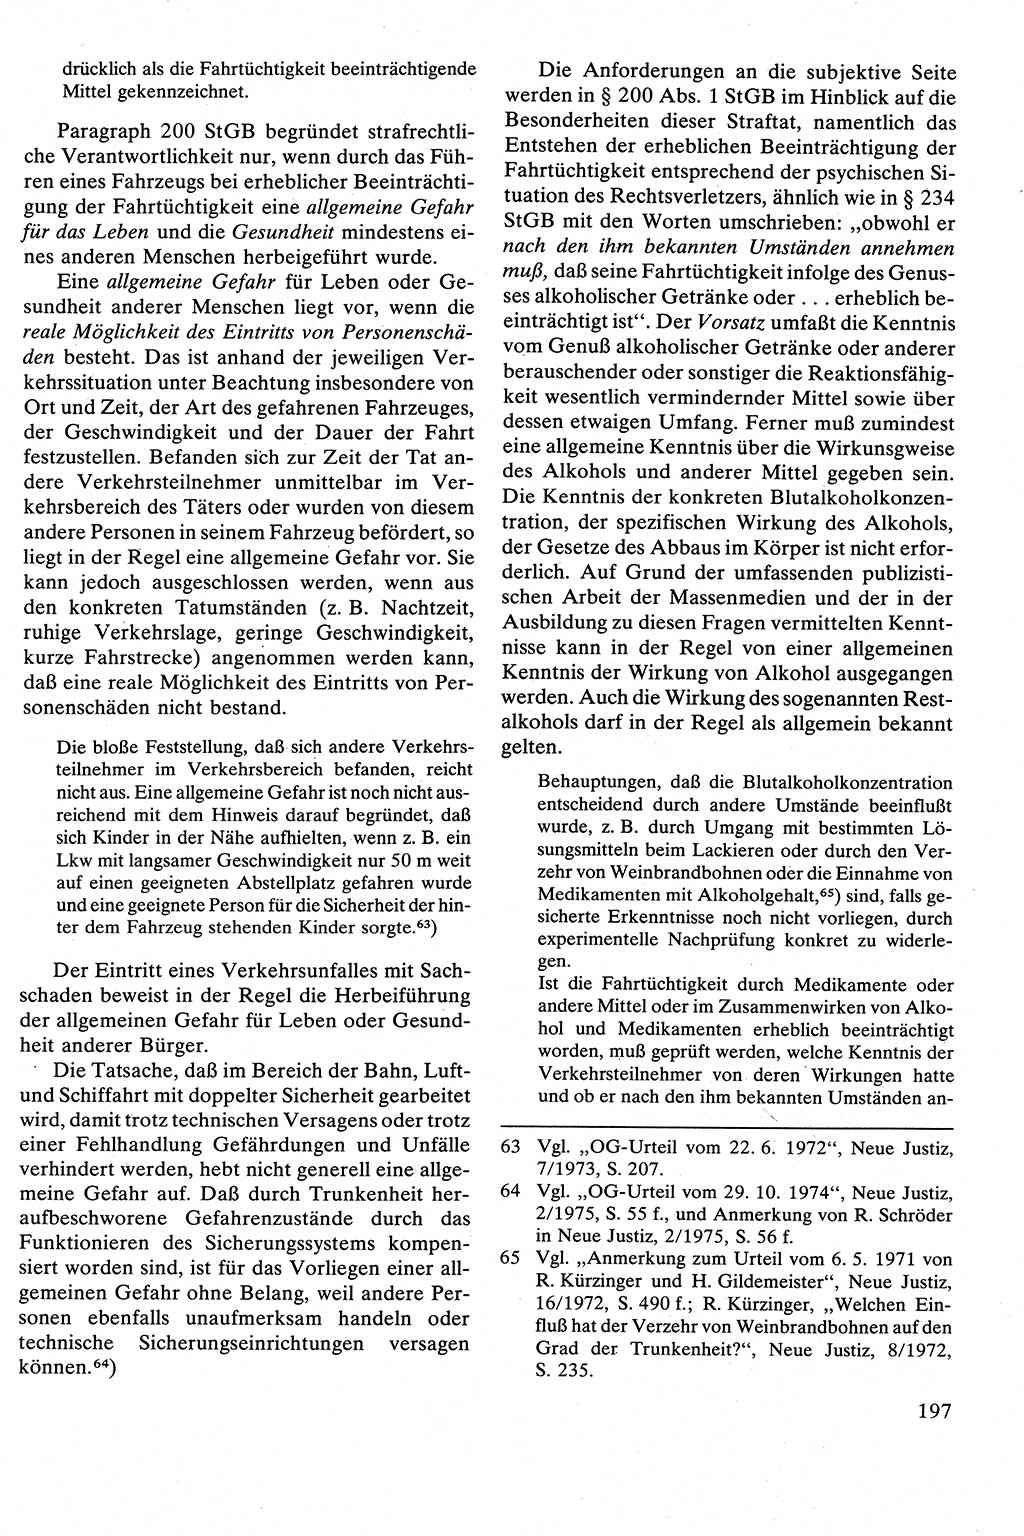 Strafrecht [Deutsche Demokratische Republik (DDR)], Besonderer Teil, Lehrbuch 1981, Seite 197 (Strafr. DDR BT Lb. 1981, S. 197)